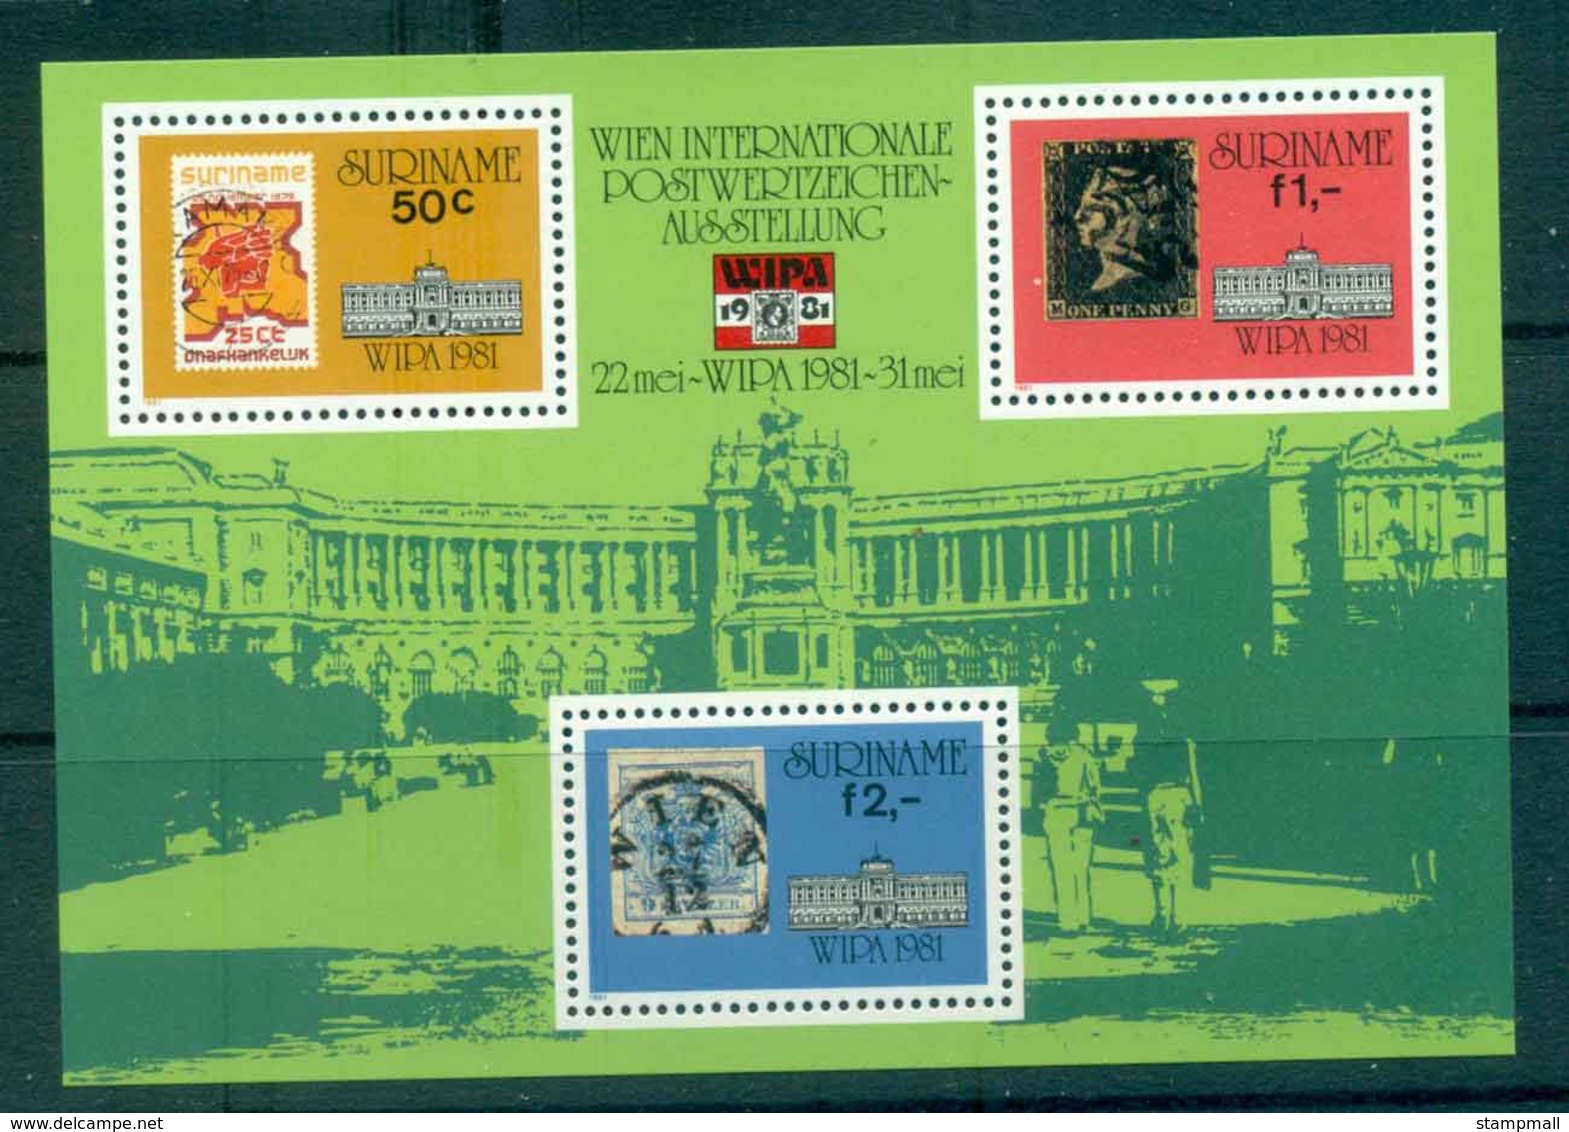 Surinam 1981 WIPA Stamp Ex. MS MUH Lot47236 - Surinam